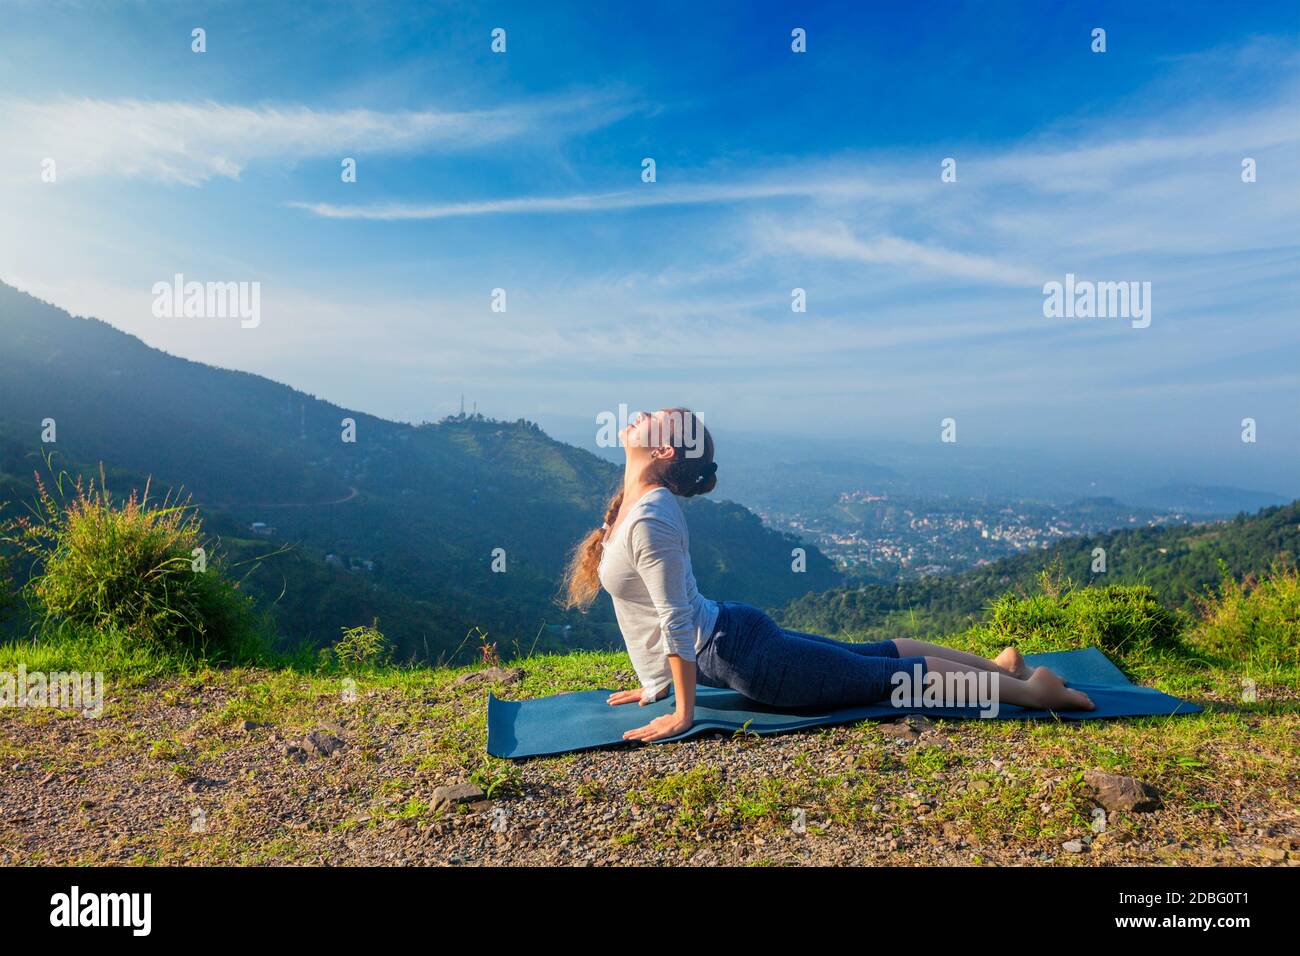 Plein air - Yoga Ashtanga vinyasa yoga pratiques femme Surya namaskar asana Urdhva Mukha Soleil Yoga Svanasana - cobra posent en montagne Banque D'Images